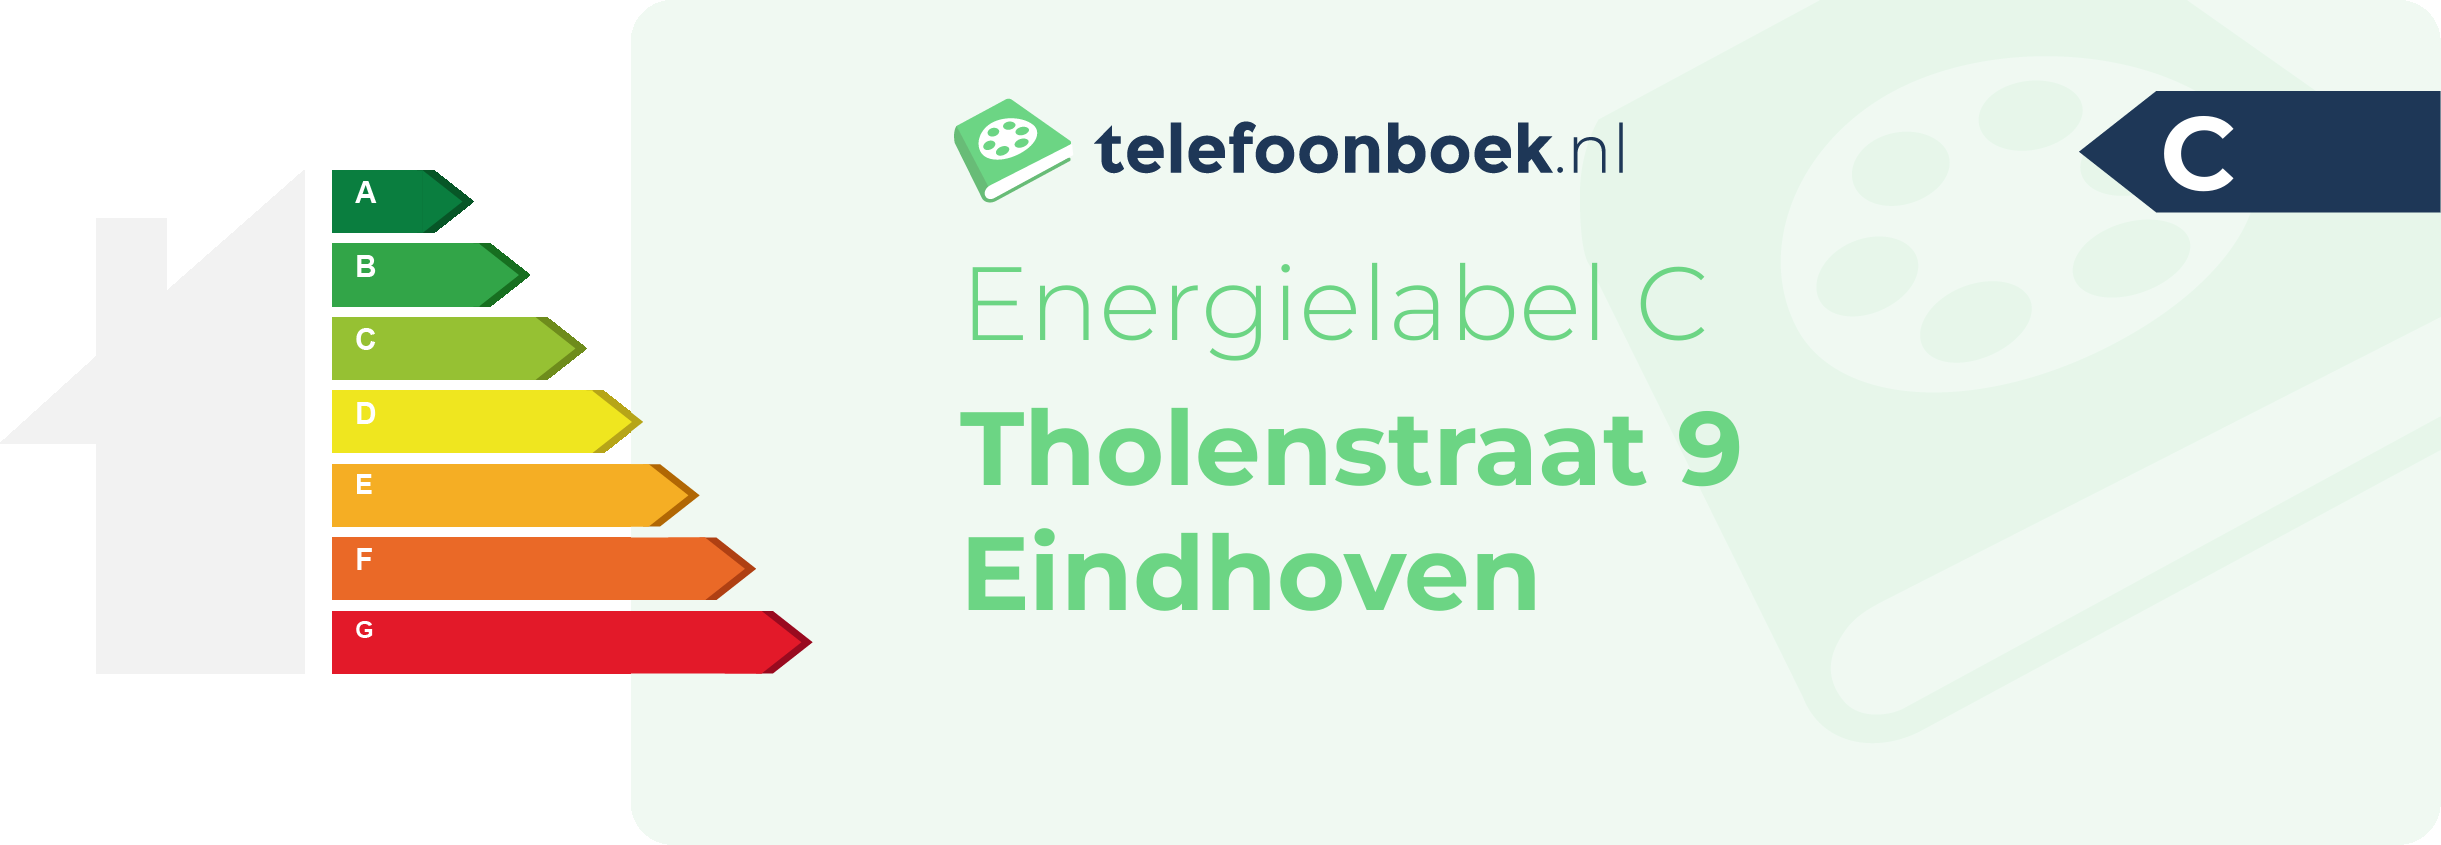 Energielabel Tholenstraat 9 Eindhoven